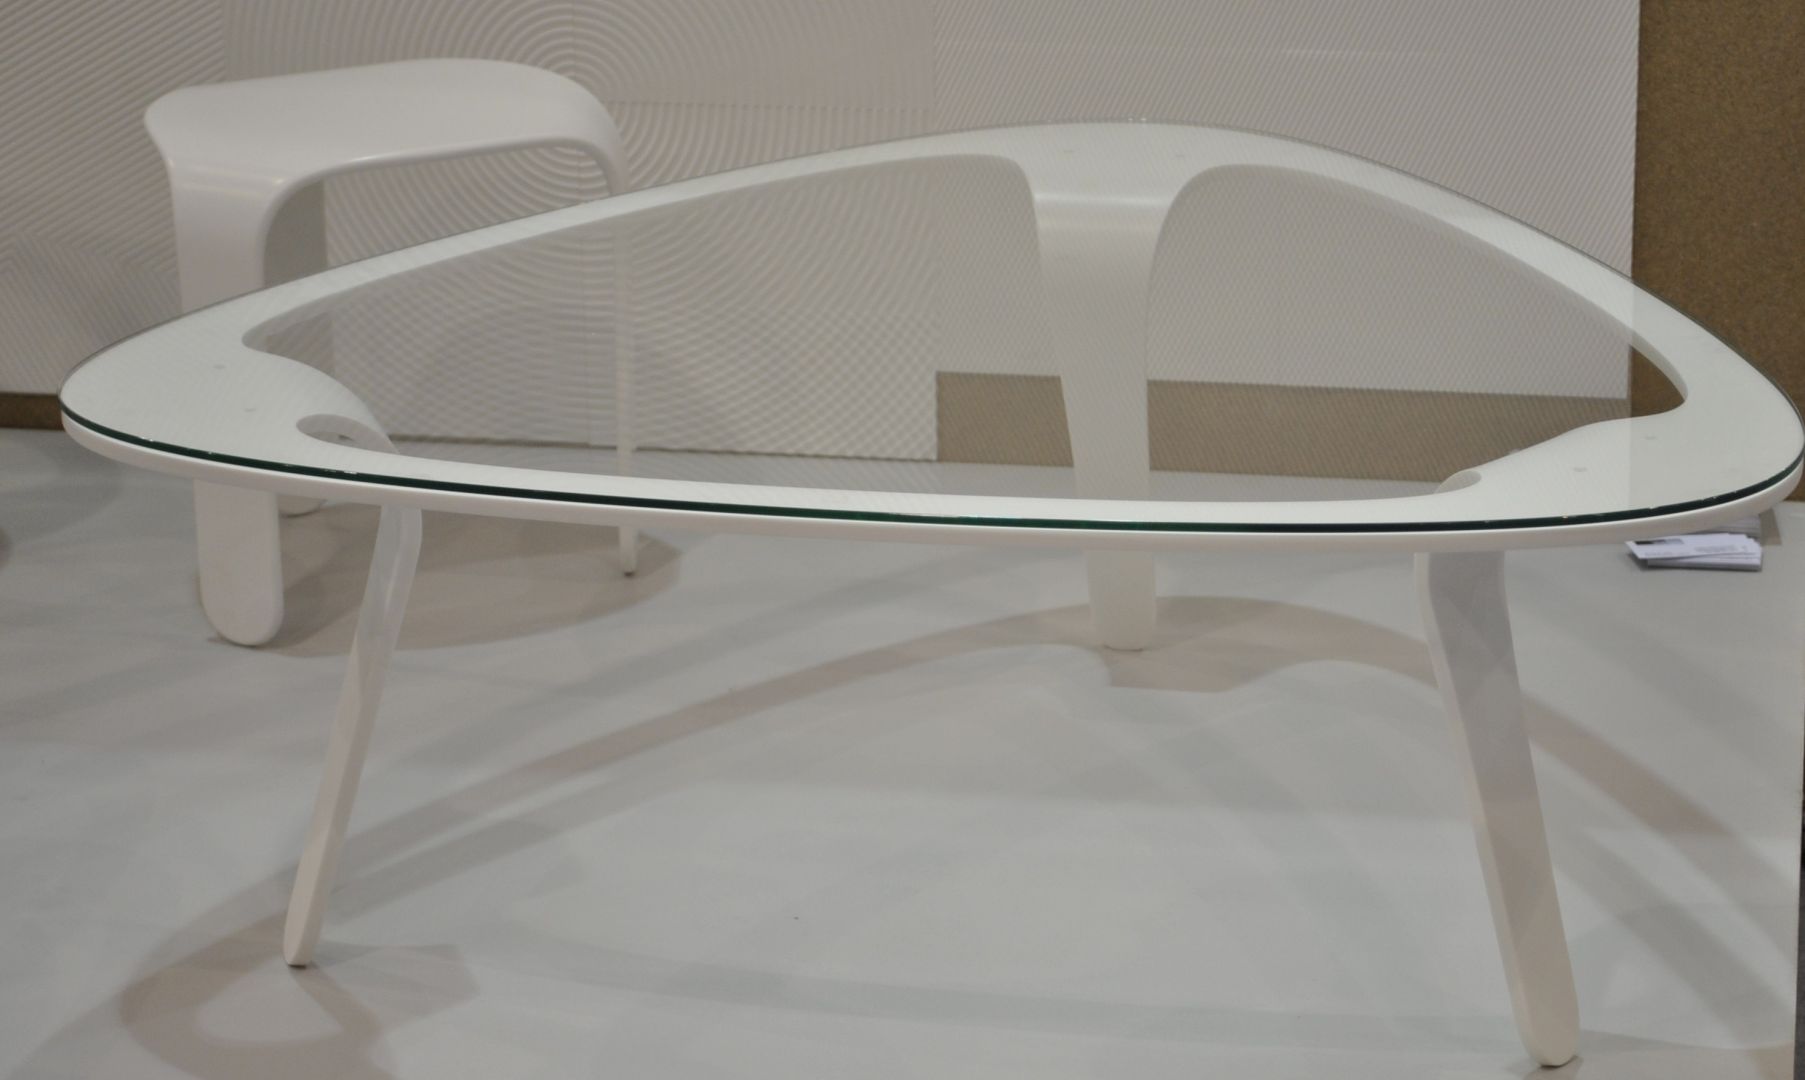 Szklany stolik Vincenzo Design Polska, zaprezentowany na targach Meble Polska 2014 w Poznaniu
Fot. Piotr Sawczuk